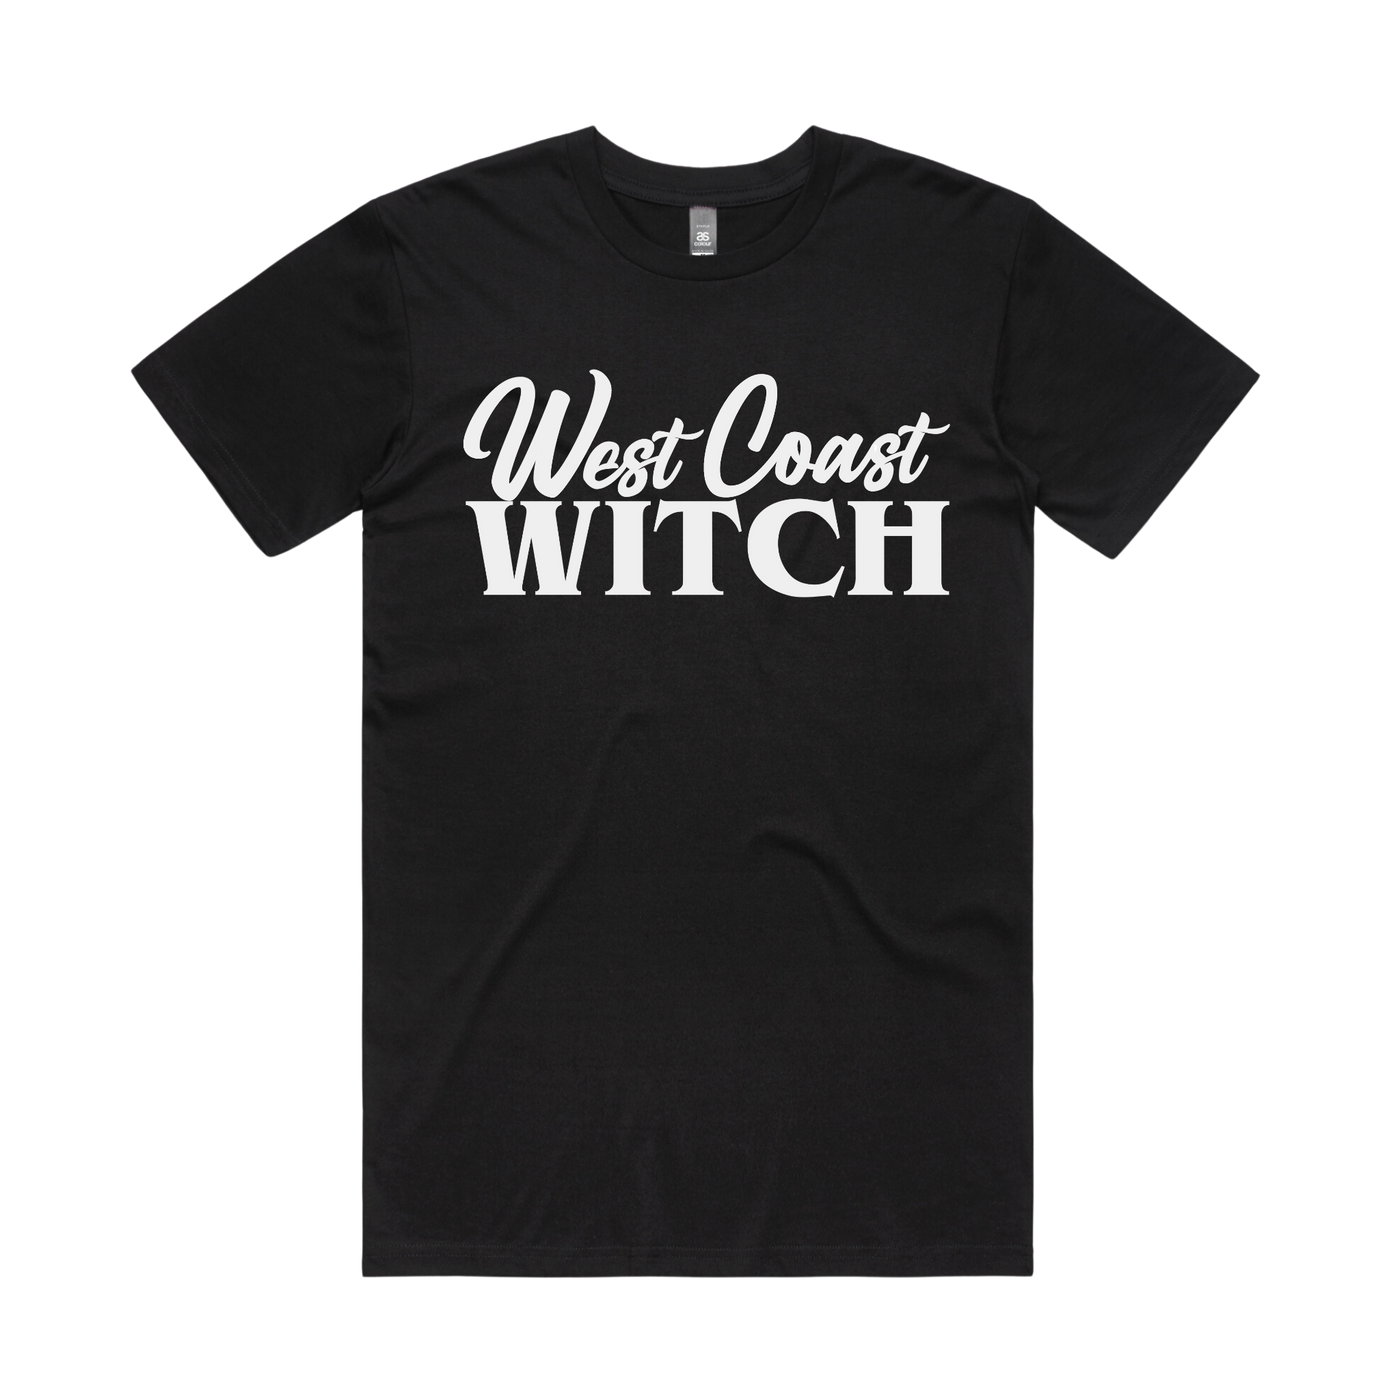 West Coast Witch Tee